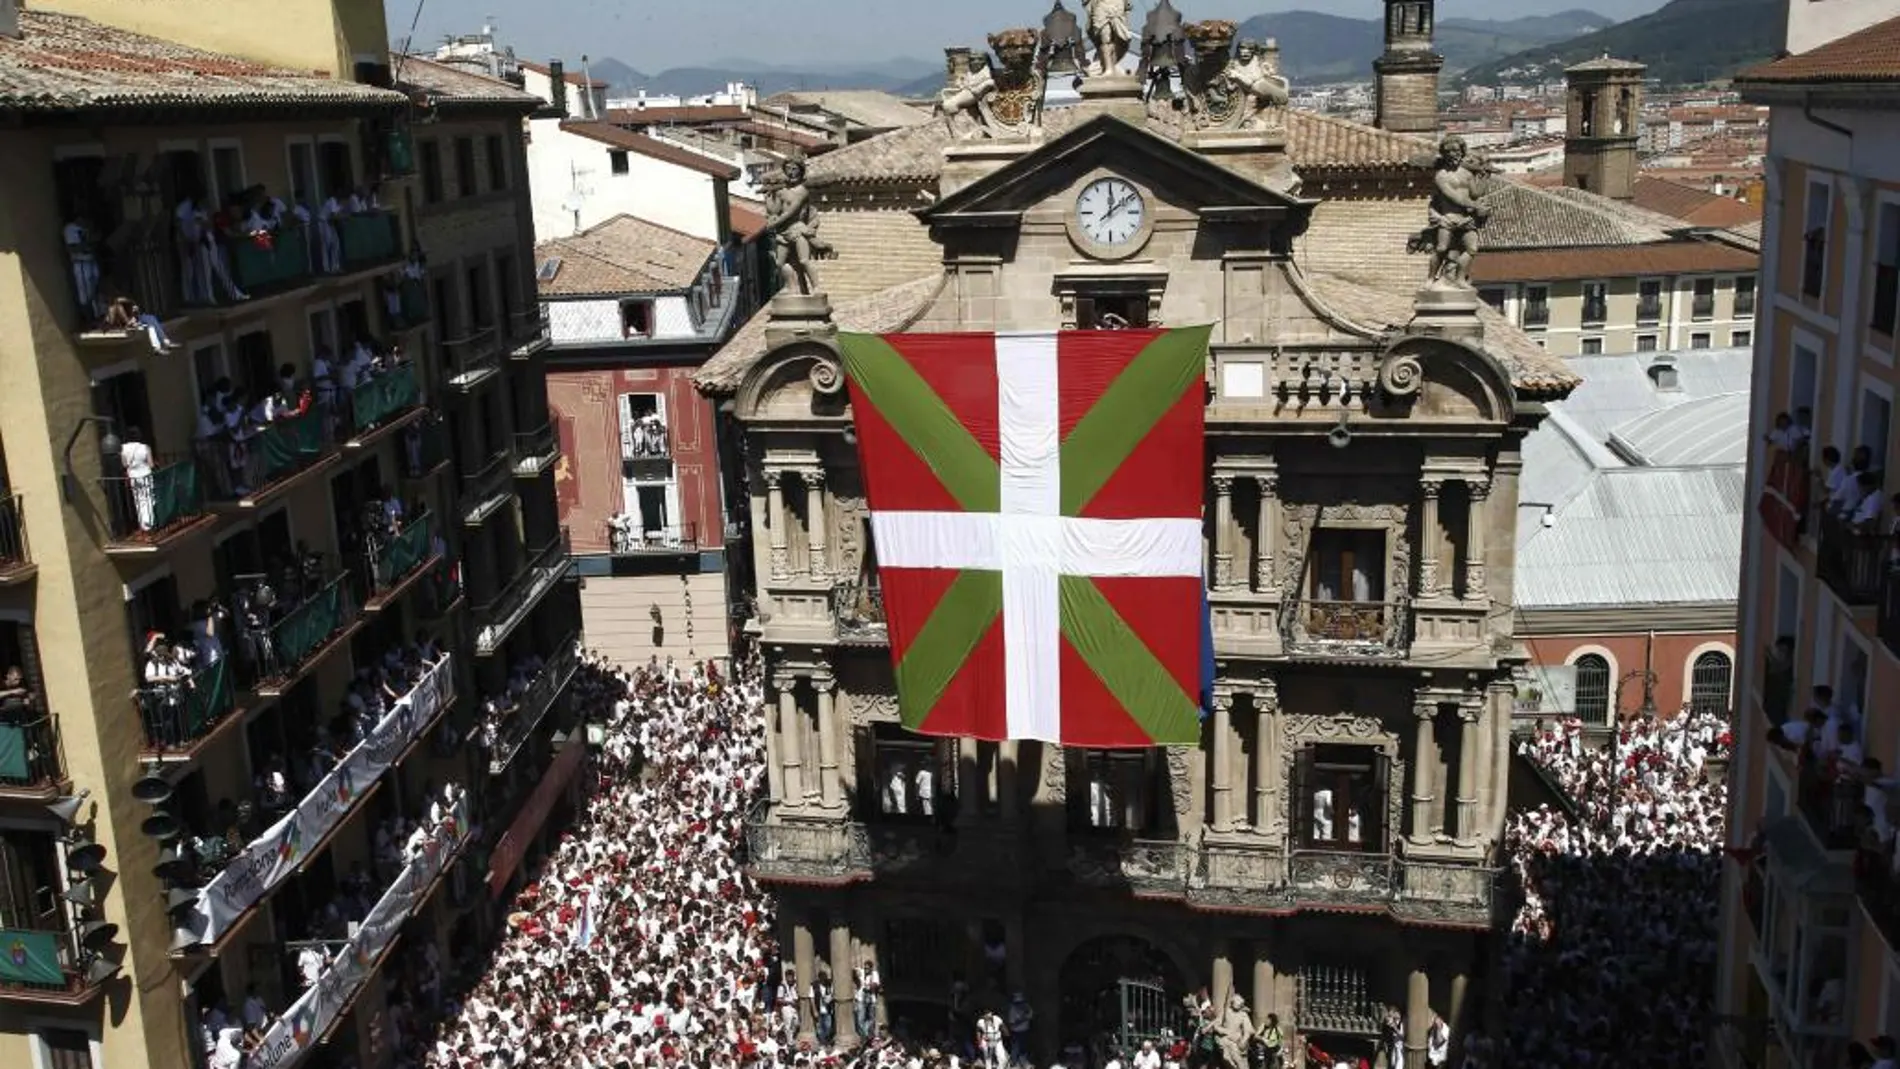 En el chupinazo de 2013, un grupo de desconocidos colgó una gran ikurriña delante de la fachada del ayuntamiento de Pamplona.